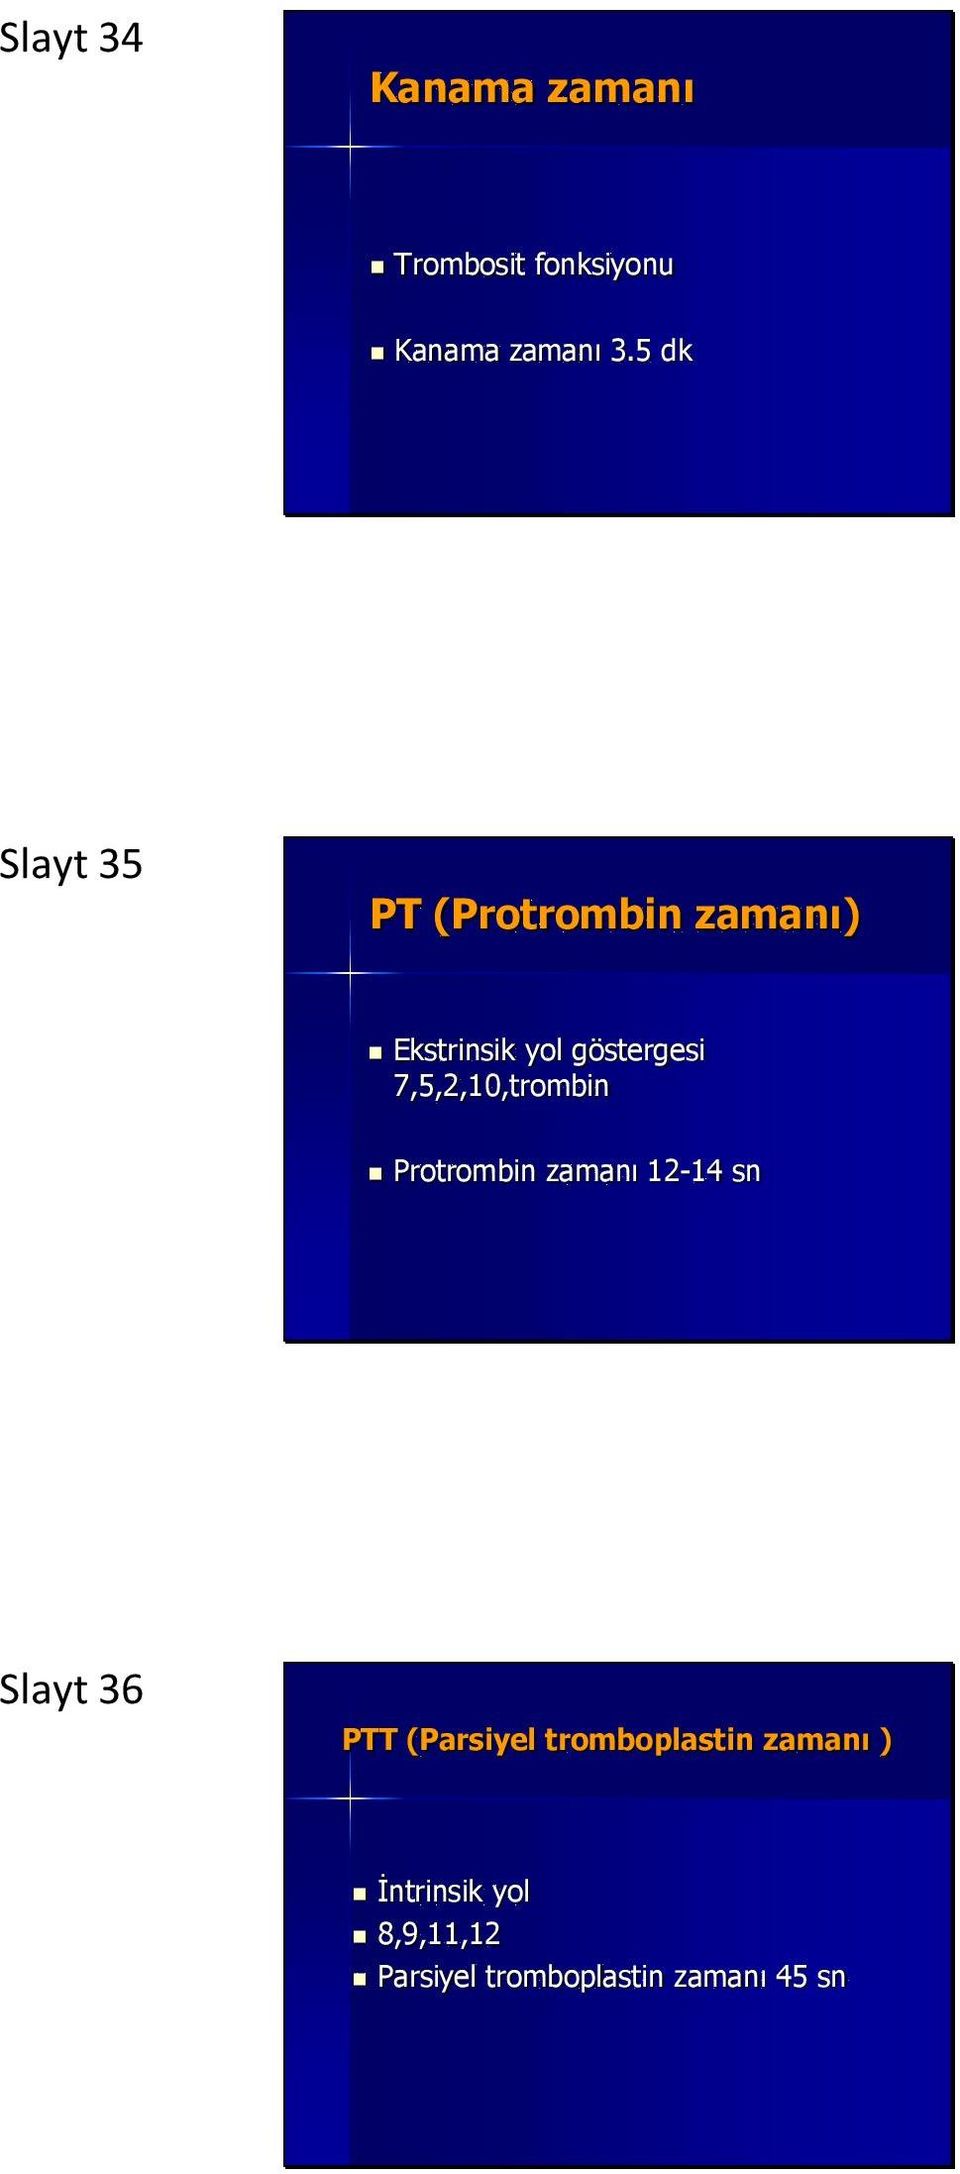 7,5,2,10,trombin Protrombin zamanı 12-14 sn Slayt 36 PTT (Parsiyel